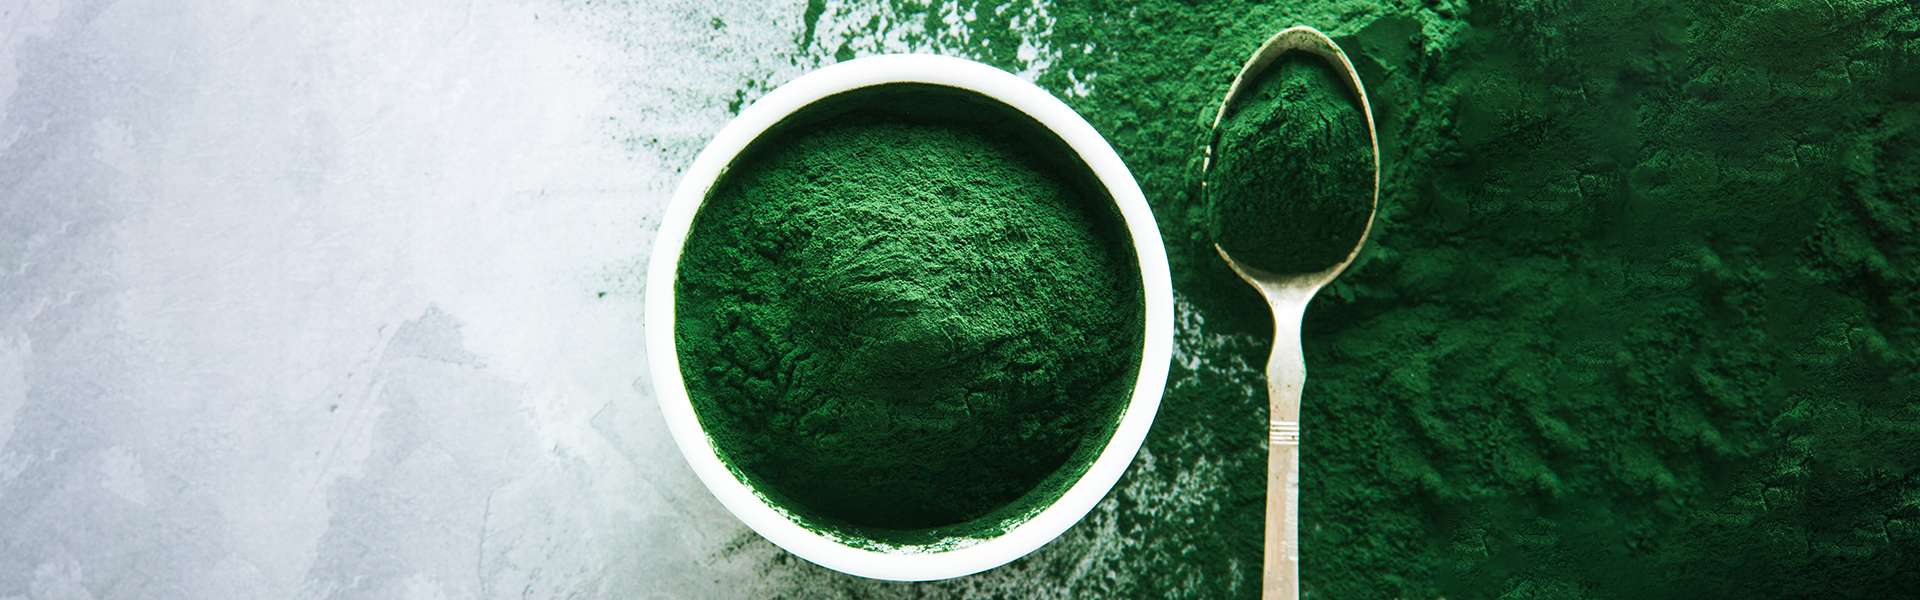 El alga espirulina y sus múltiples beneficios